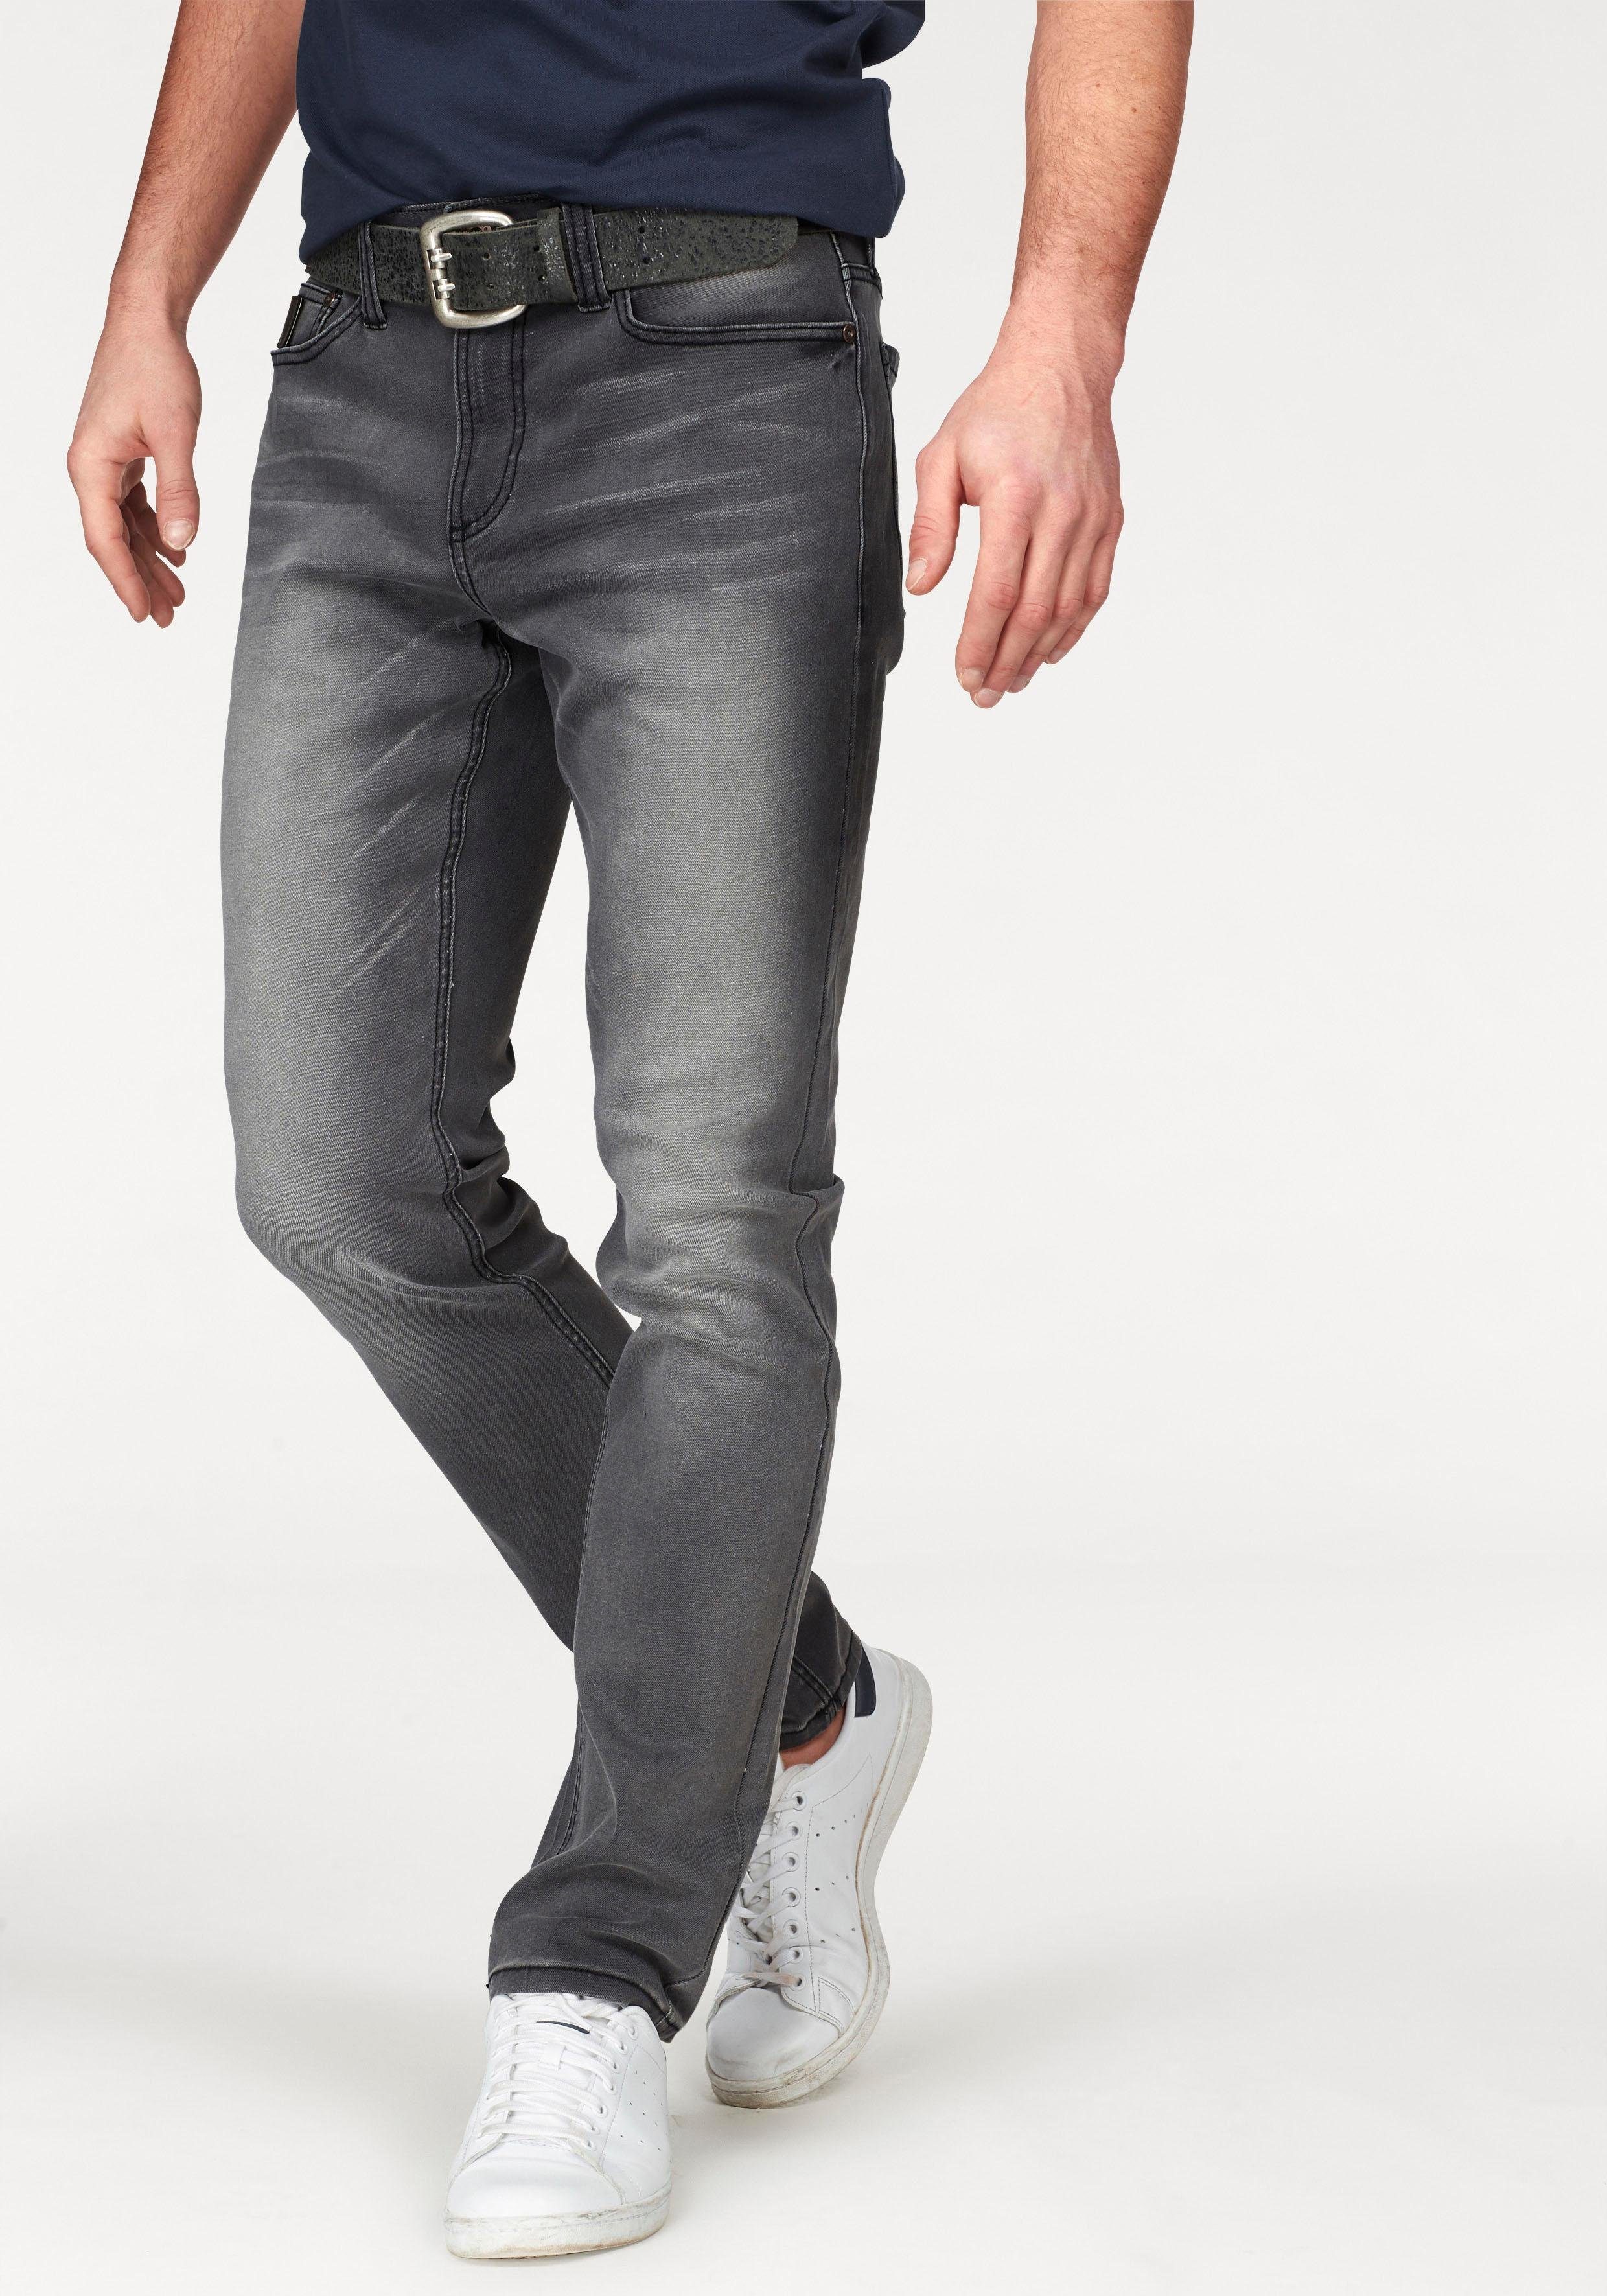 Herren Jeans in grau online kaufen | OTTO